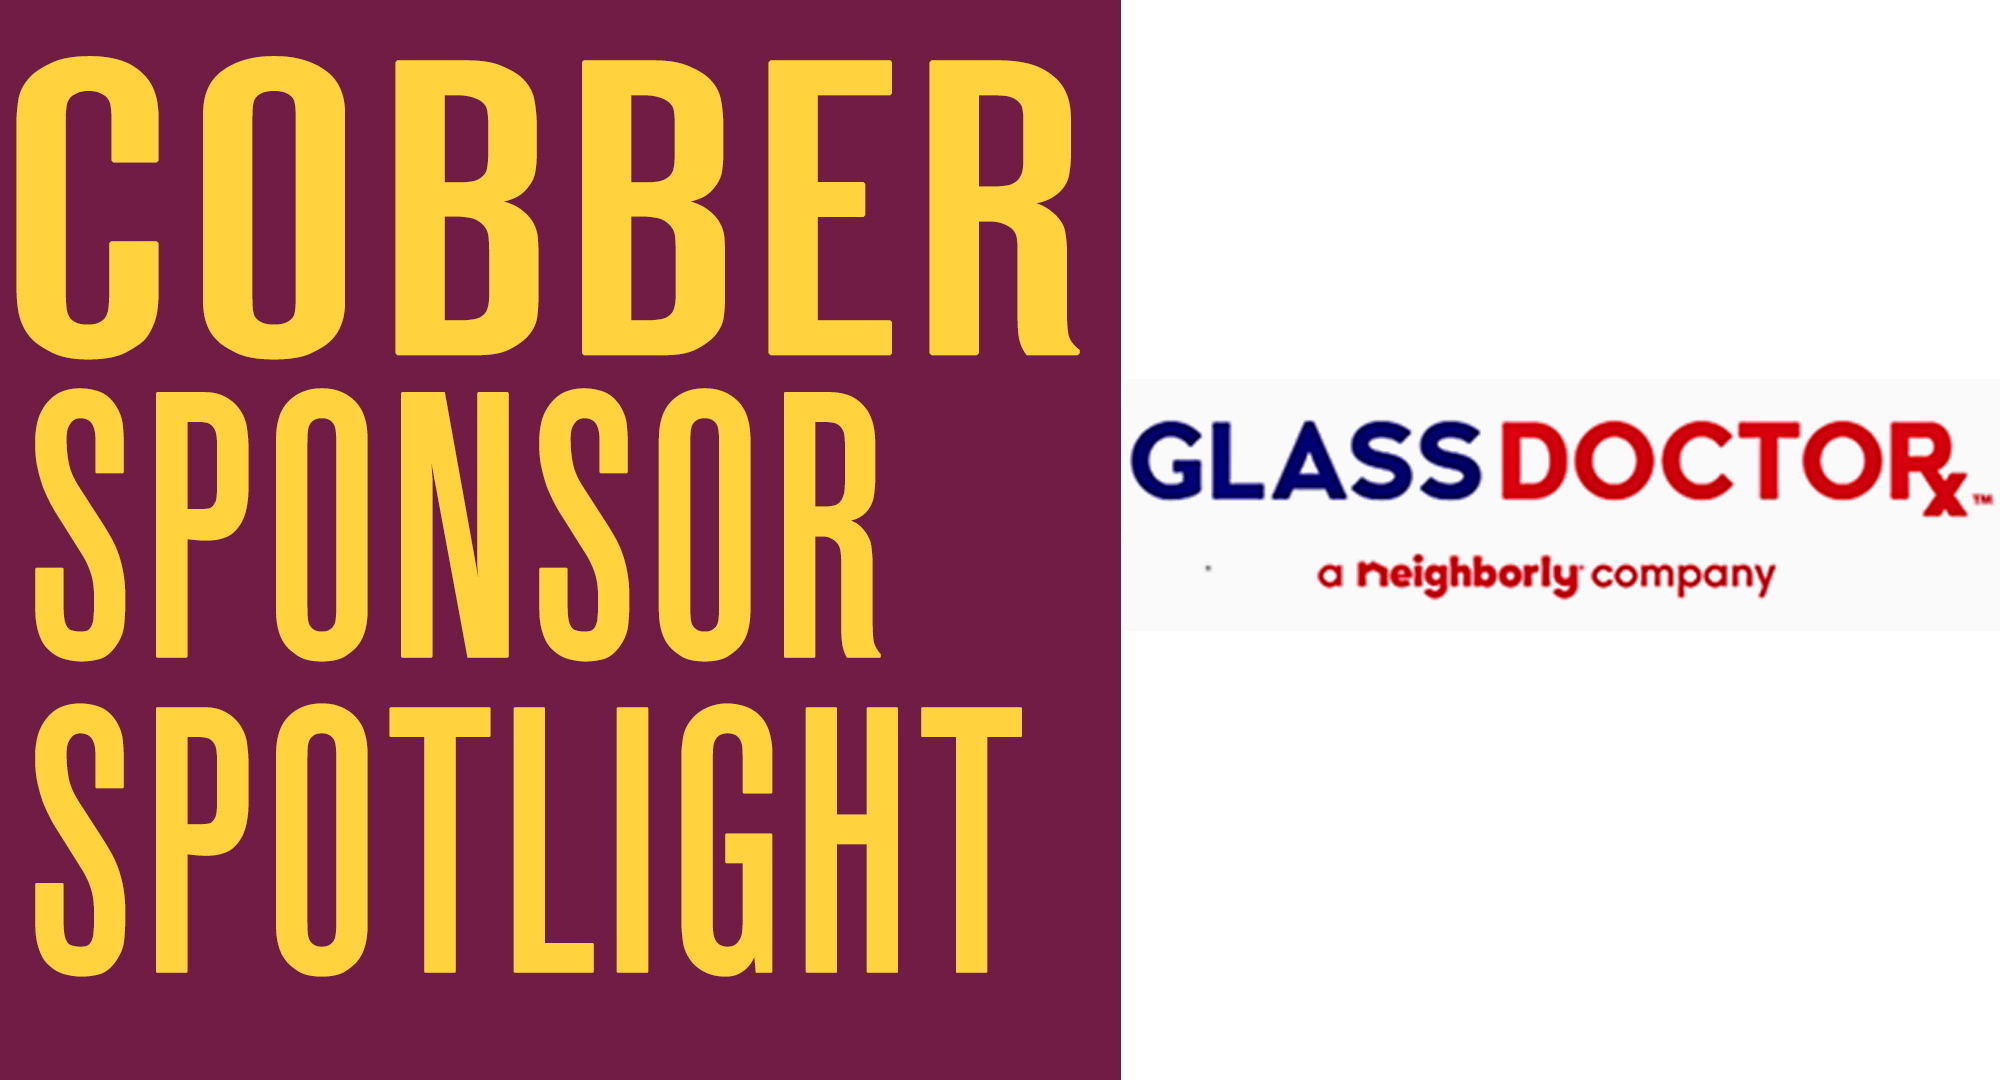 Cobber Sponsor Spotlight - Glass Doctor